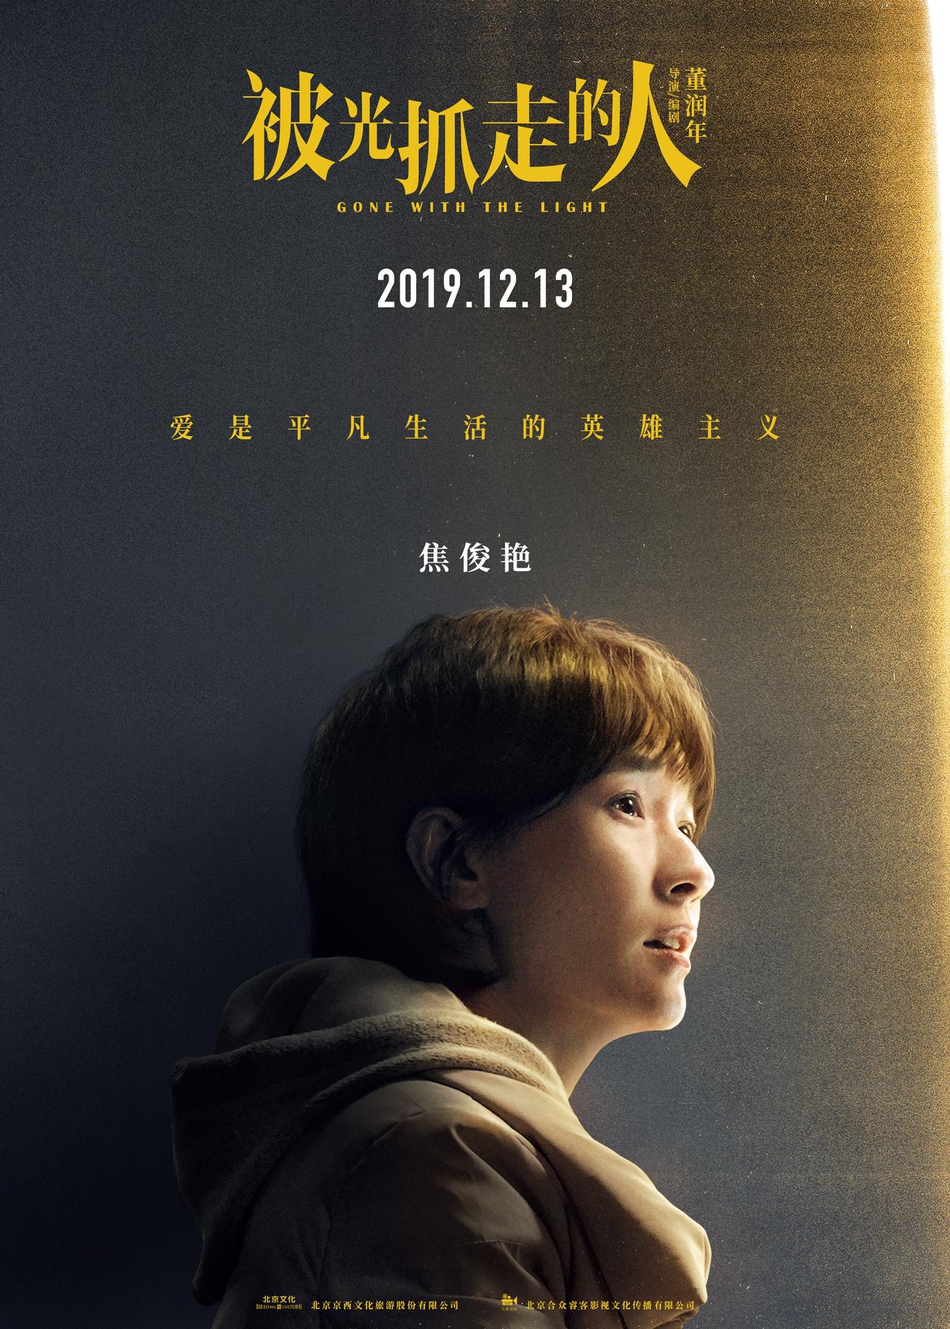 12月13日，黄渤、王珞丹主演电影《被光抓走的人》定档海报人物图片第1张